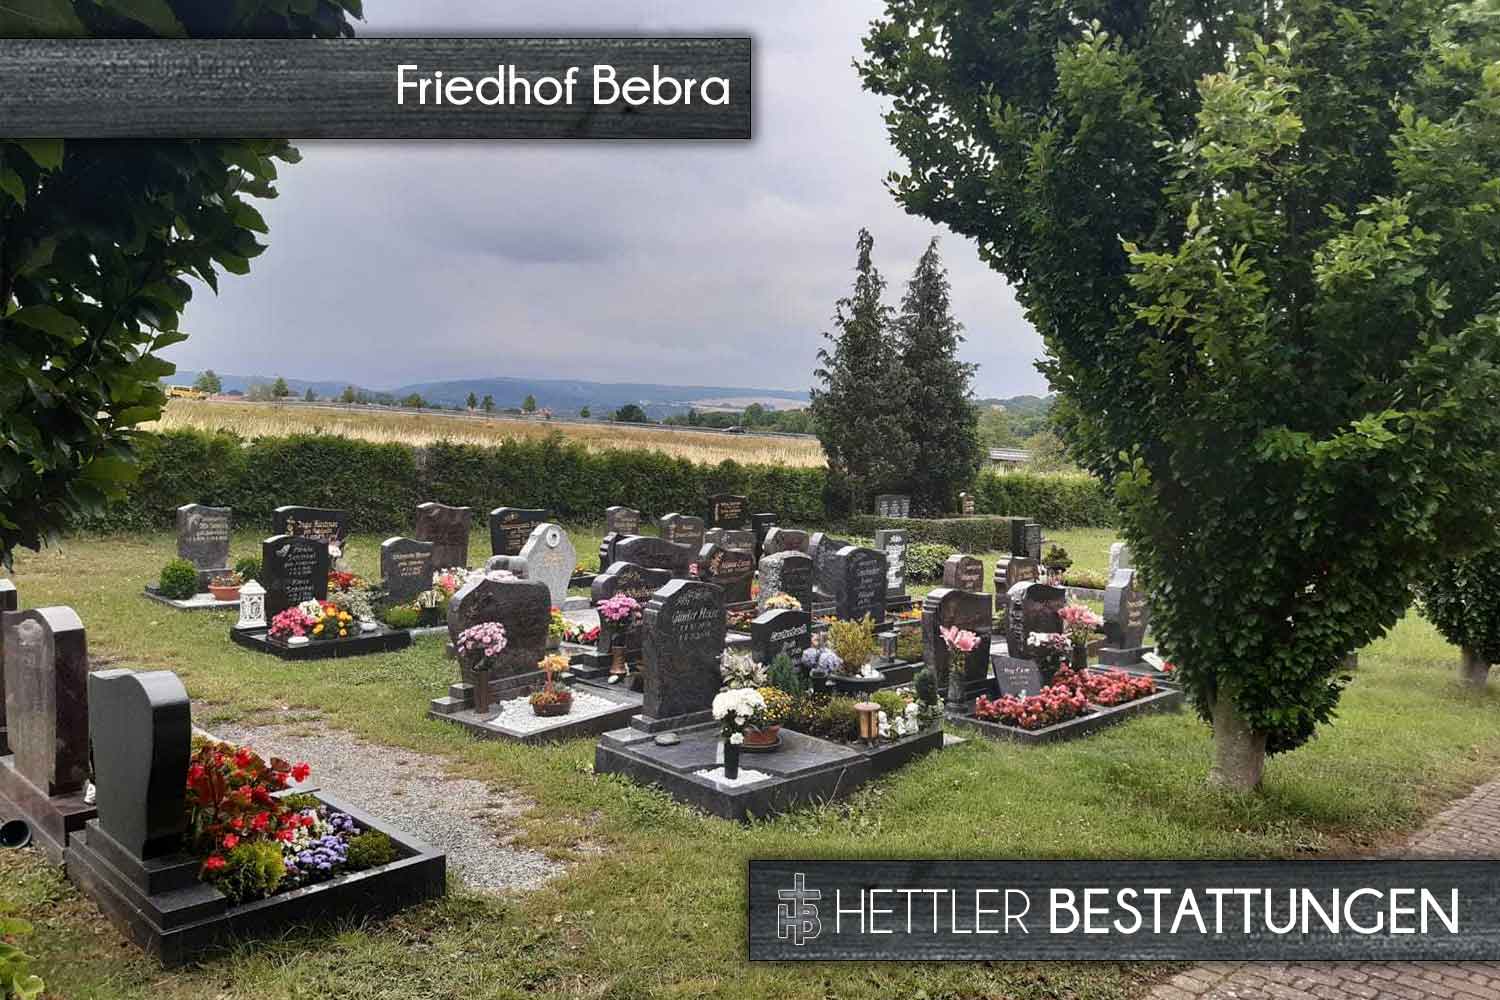 Friedhof in Sondershausen-Bebra. Ihr Ort des Abschieds mit Hettler Bestattungen.